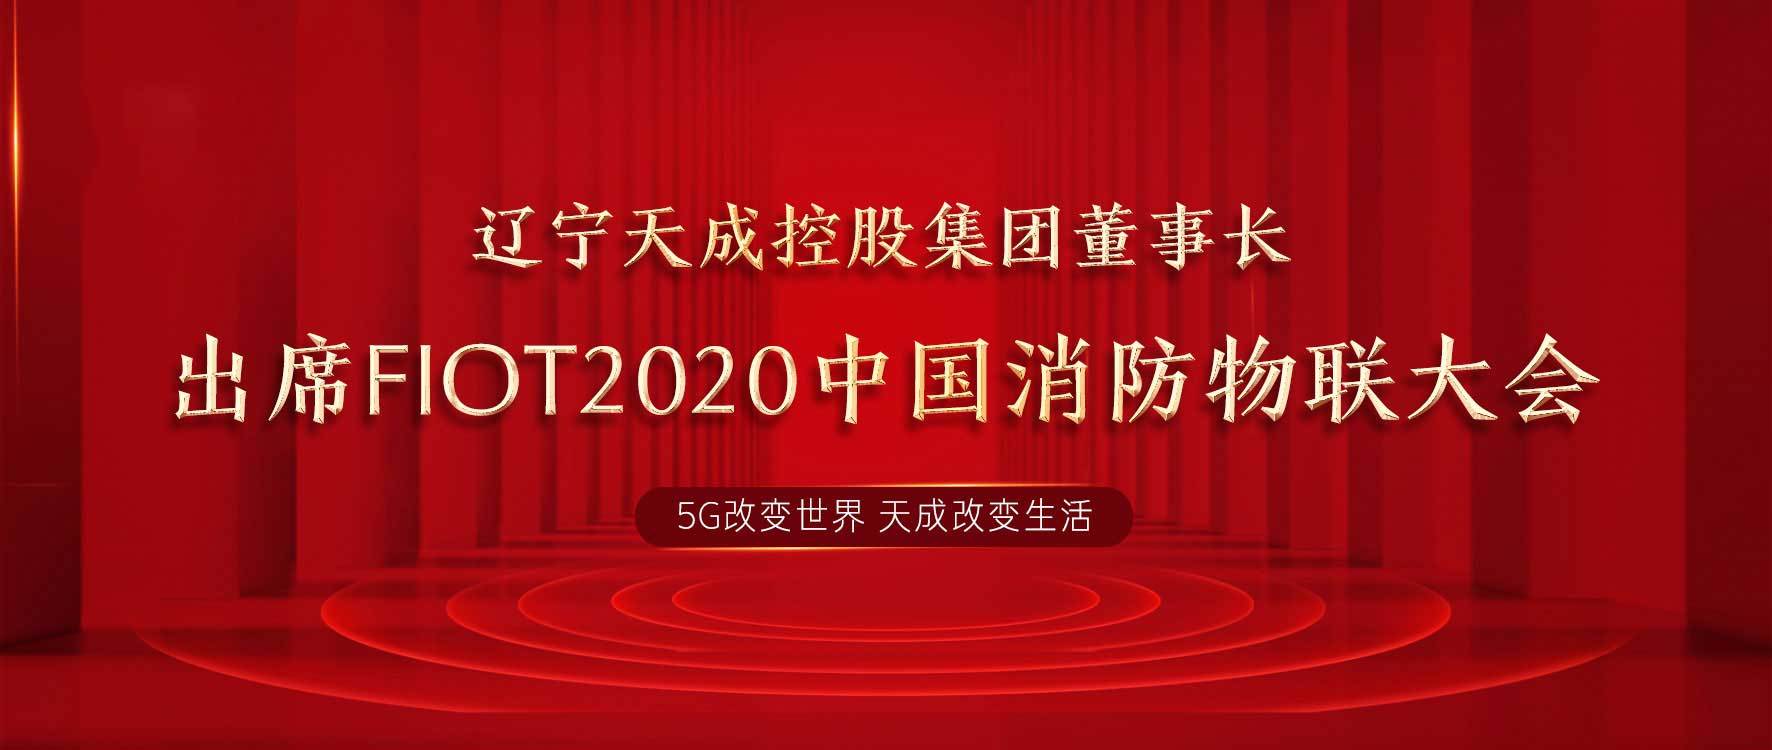 辽宁天成控股集团董事长出席FIOT 2020中国消防物联大会 